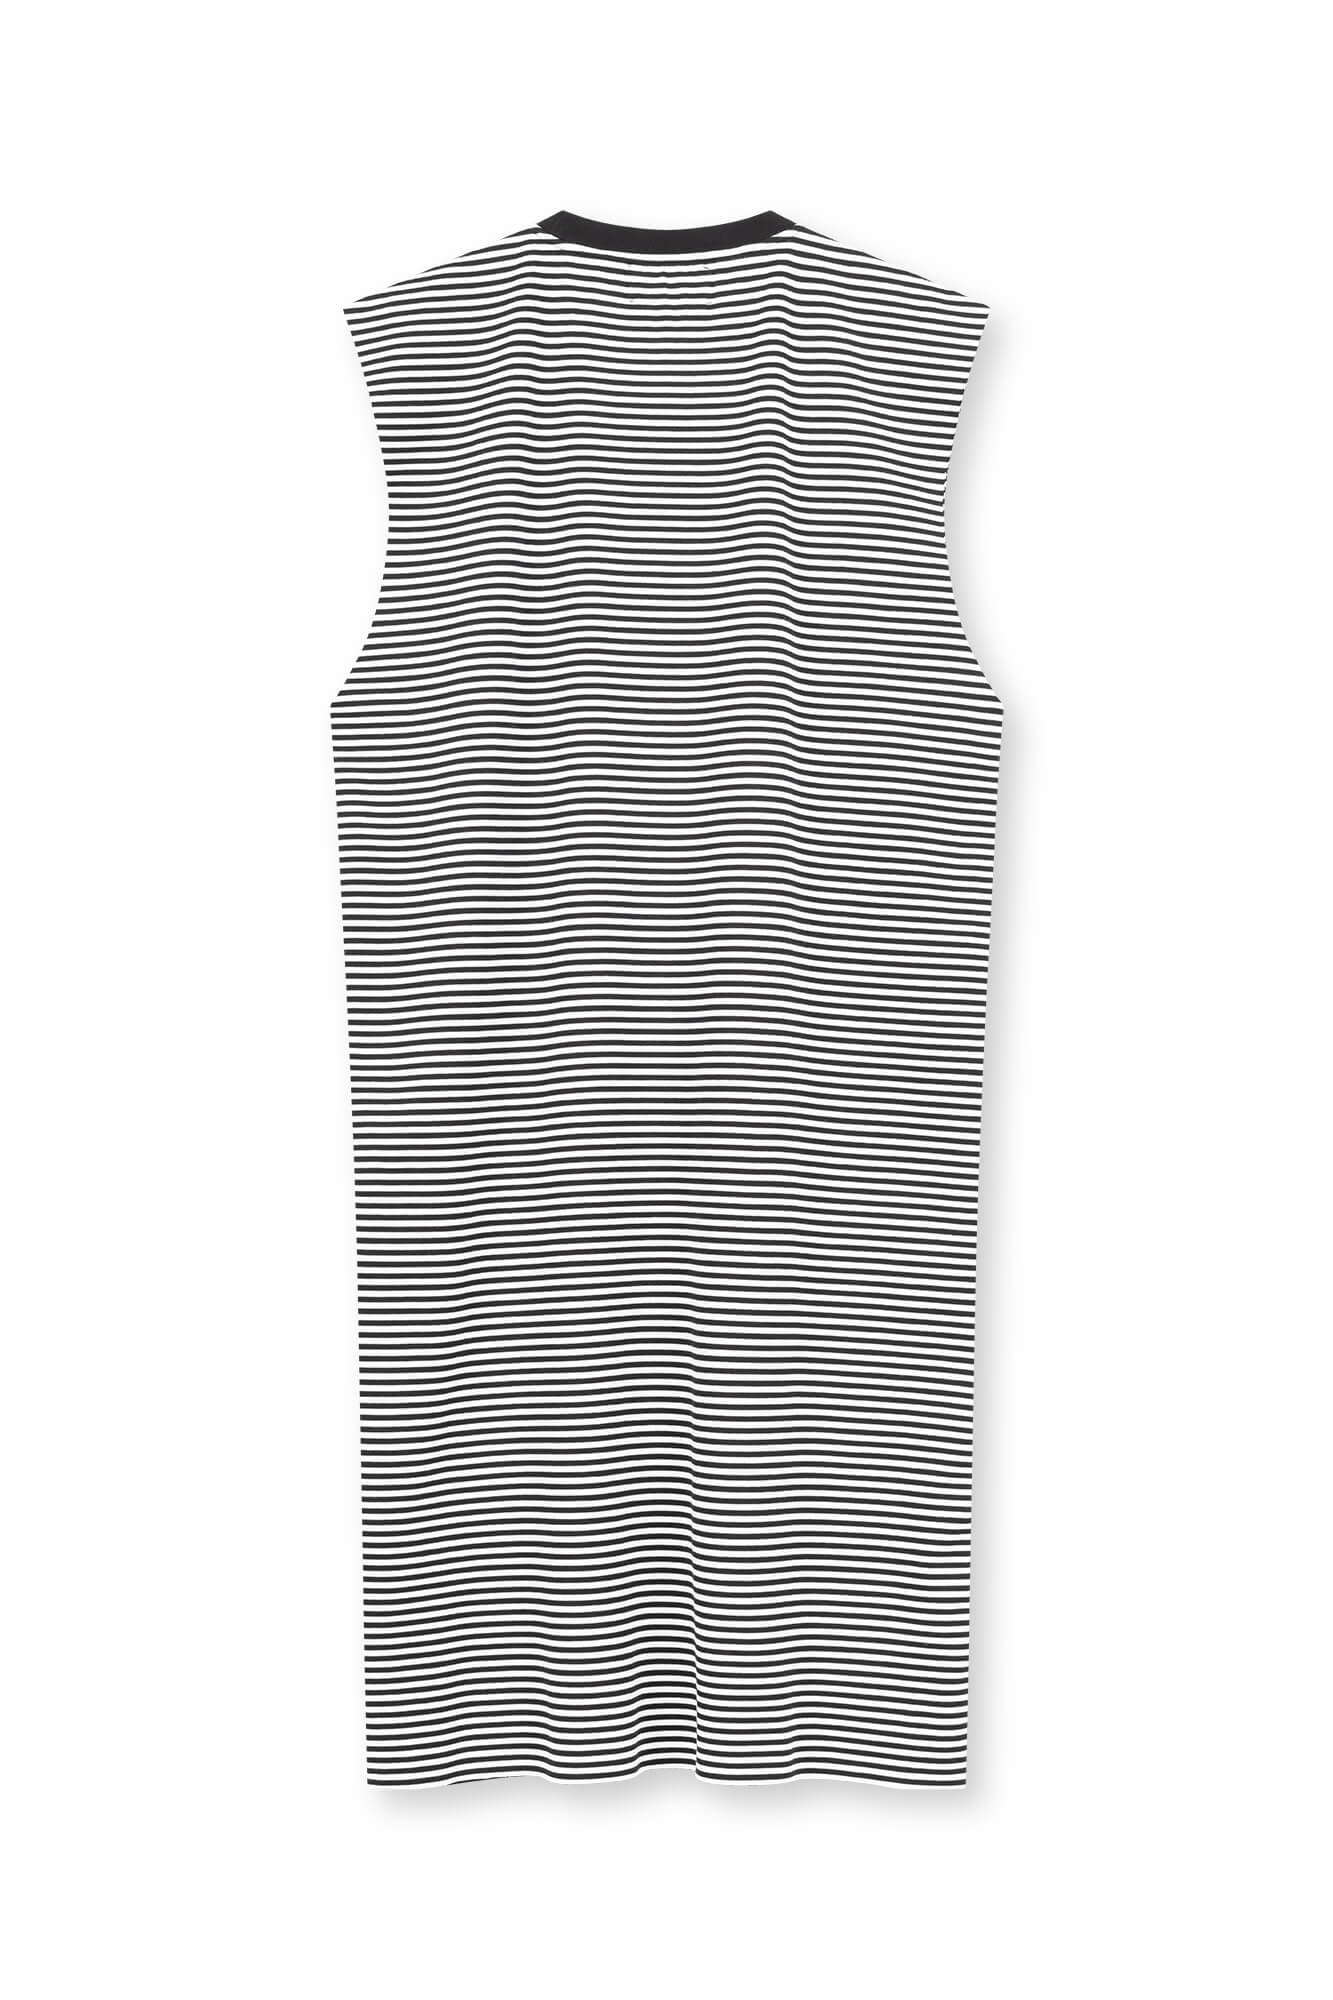 Aermelloses Kleid in schwarz weiß von hinten by VIVAL.STUDIO